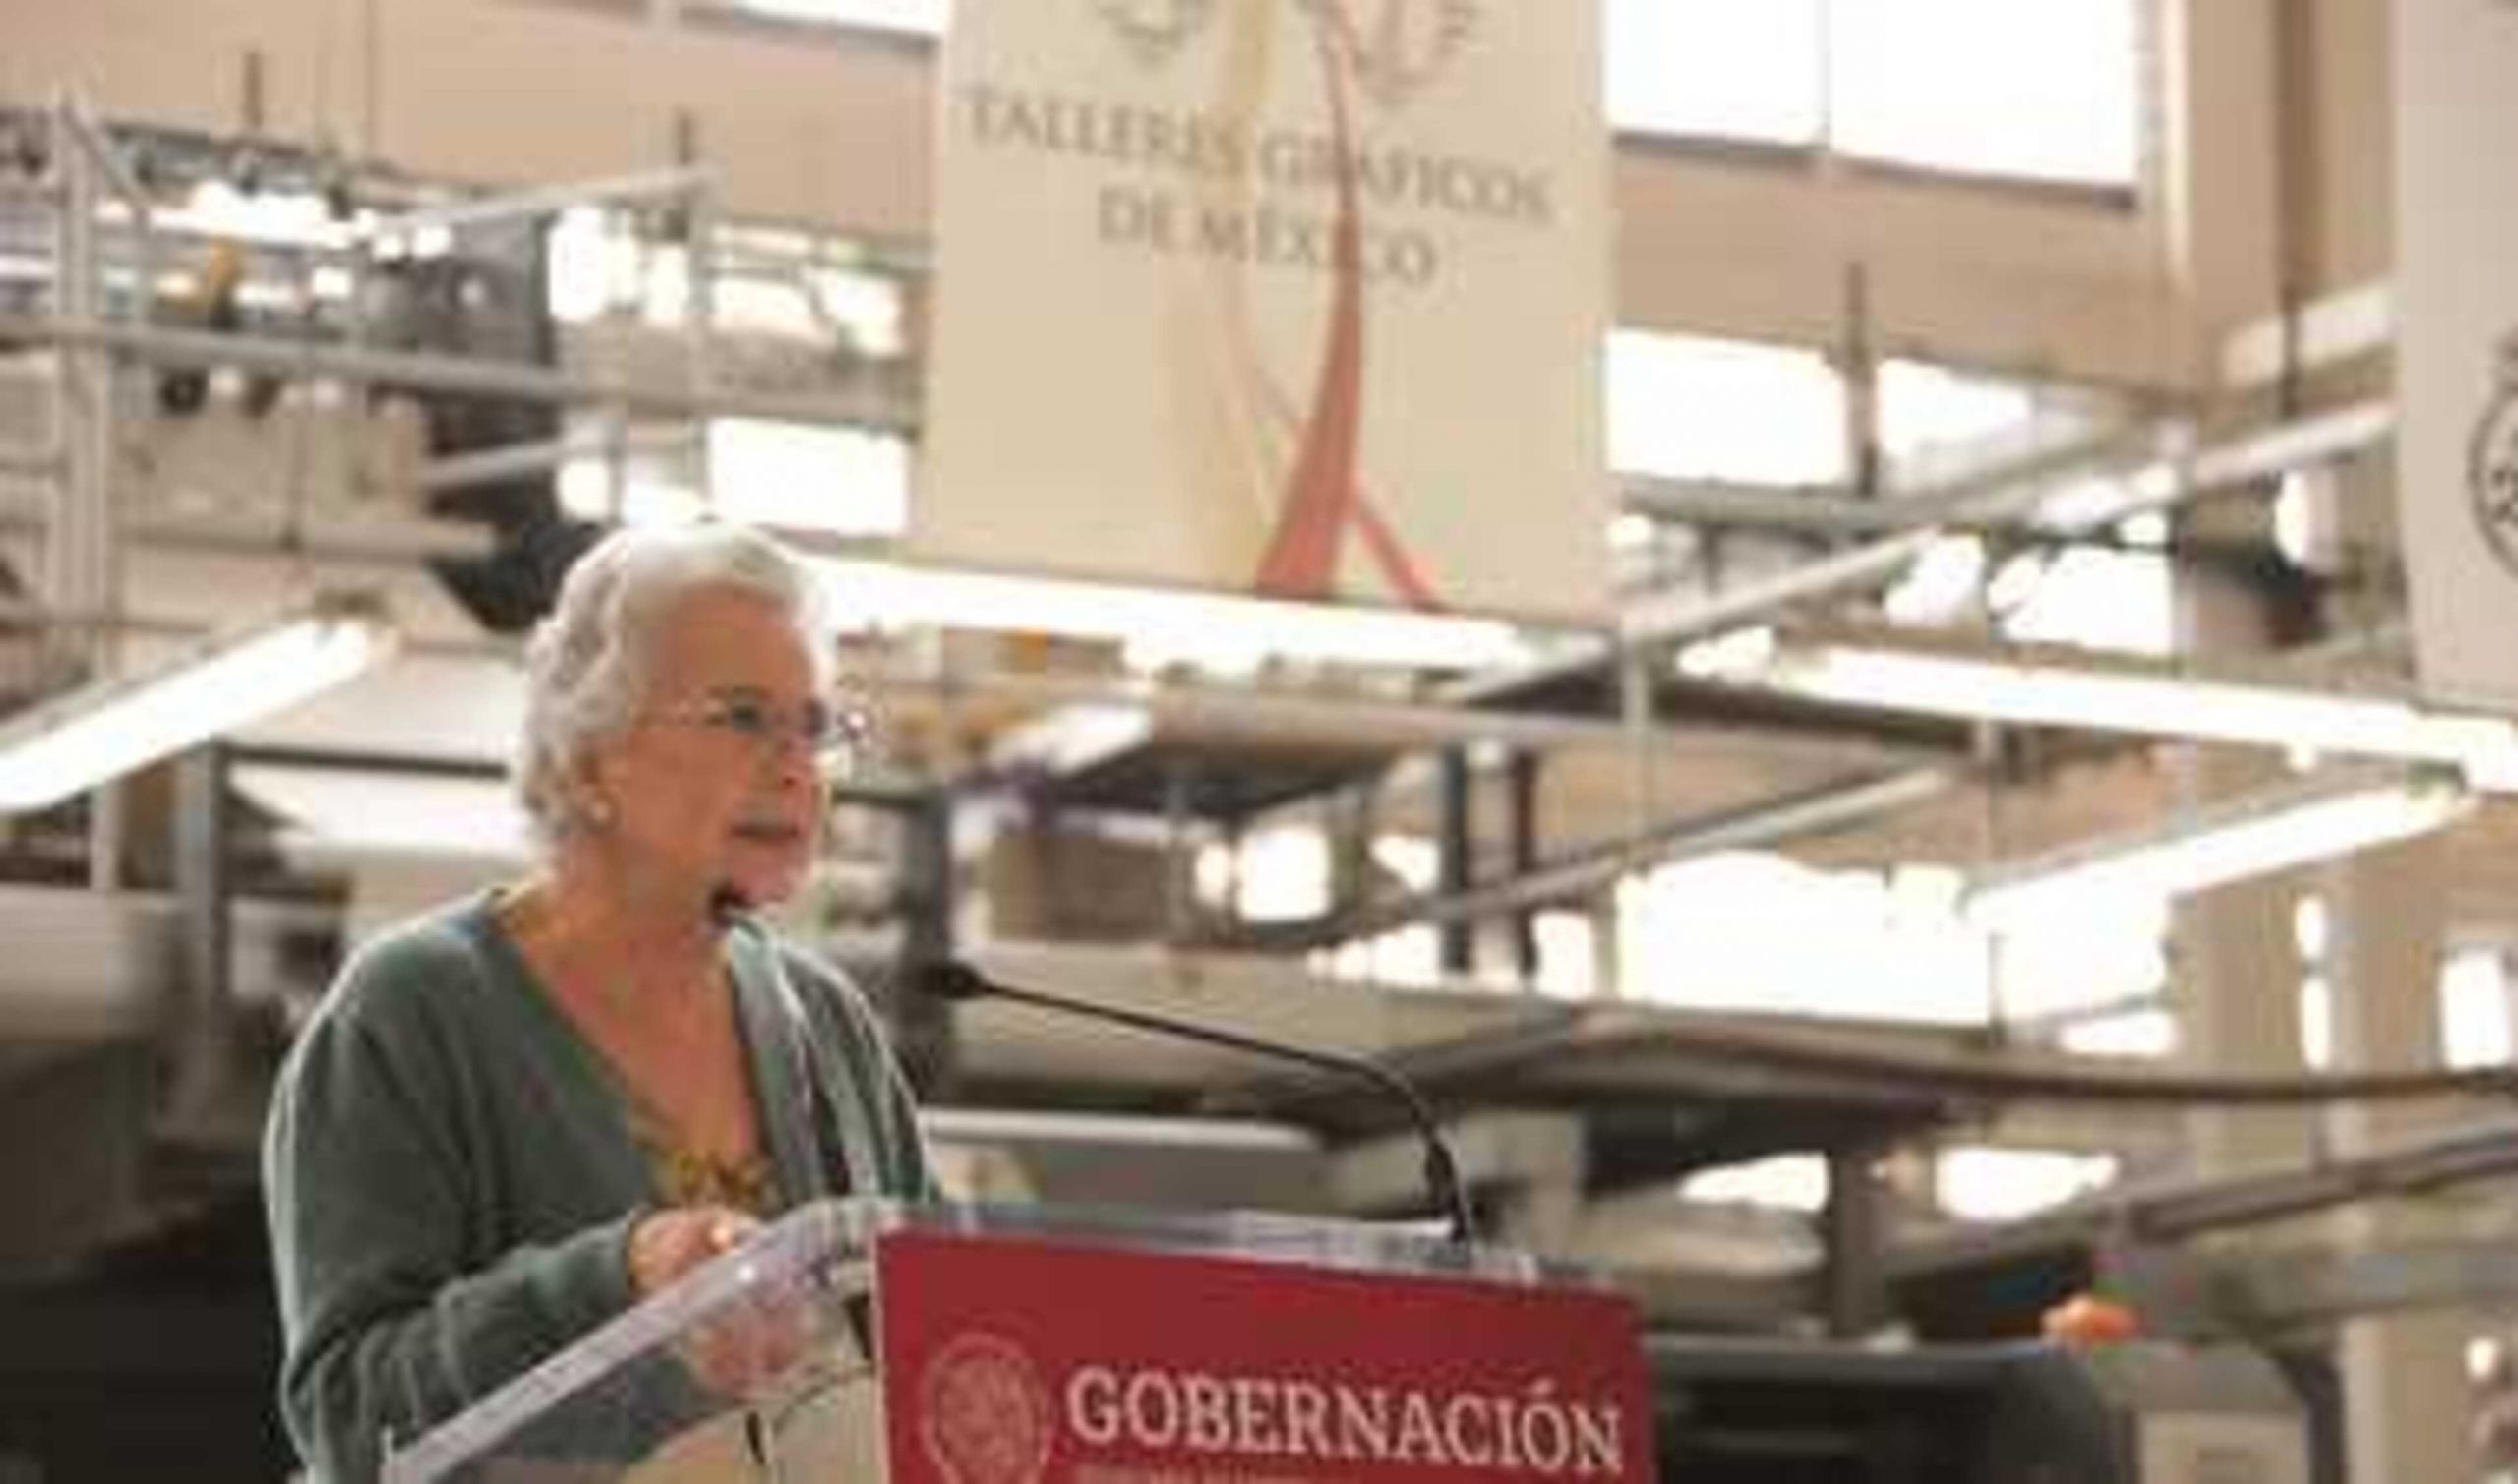 Consulta popular ejercicio democrático que nadie debe desalentar, señala secretaria Olga Sánchez Cordero